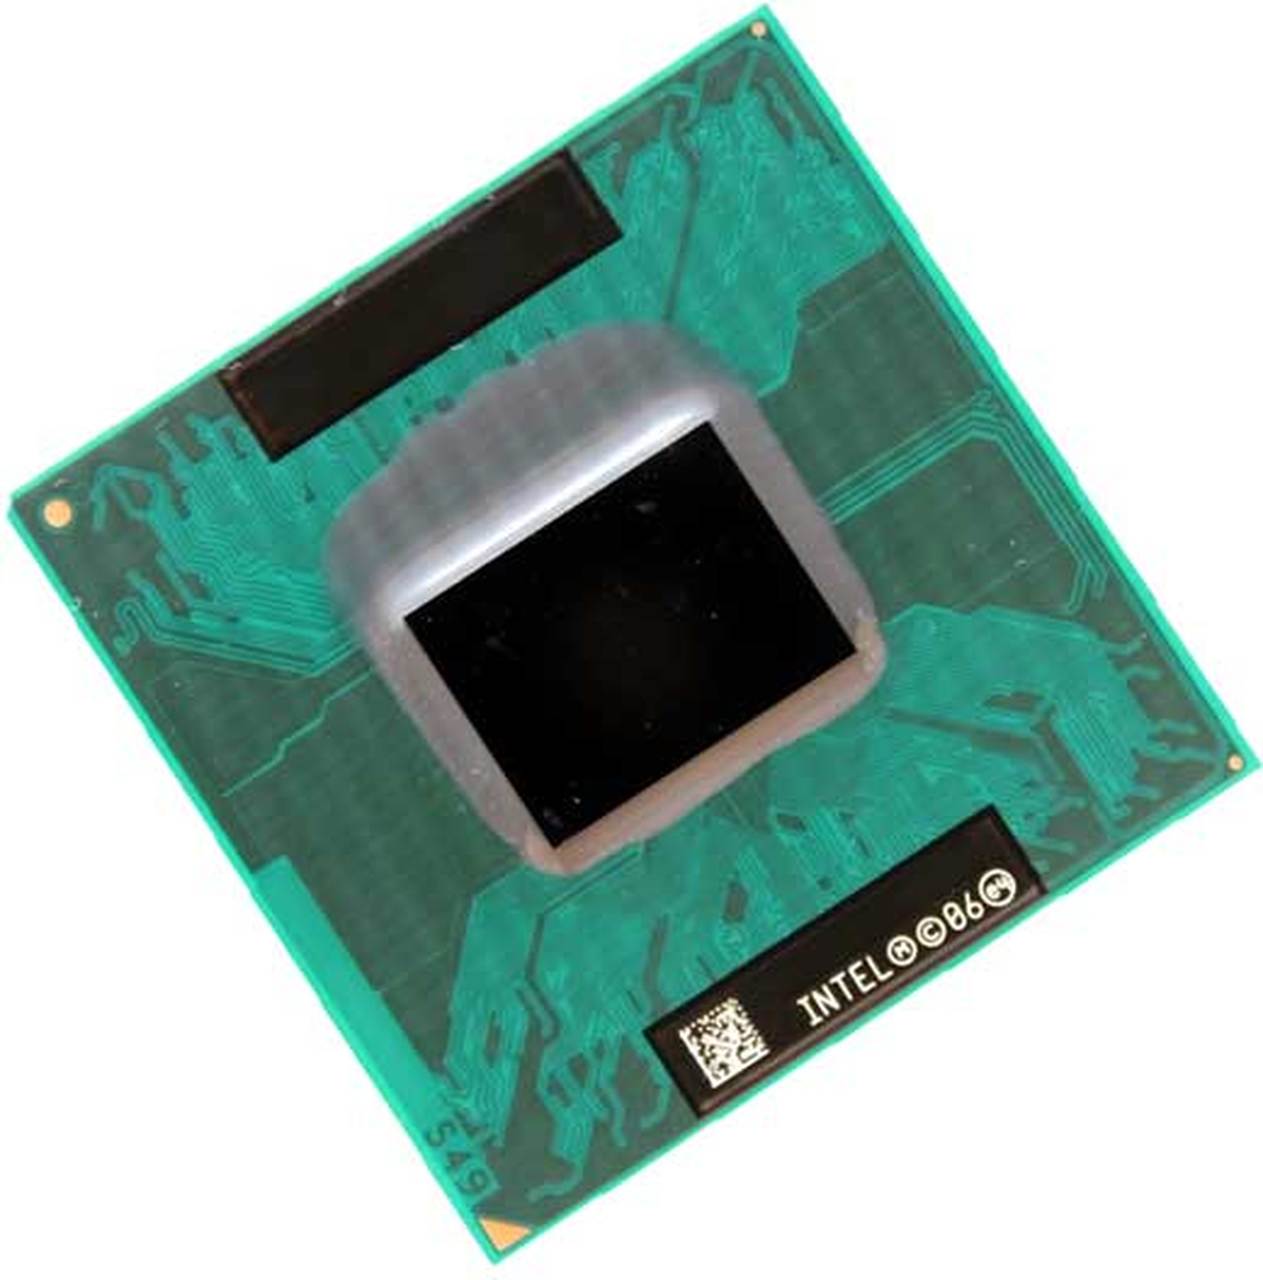 399930-003 | HP Core Solo T1350 1 Core 1.86GHz PGA478 2 MB L2 Processor